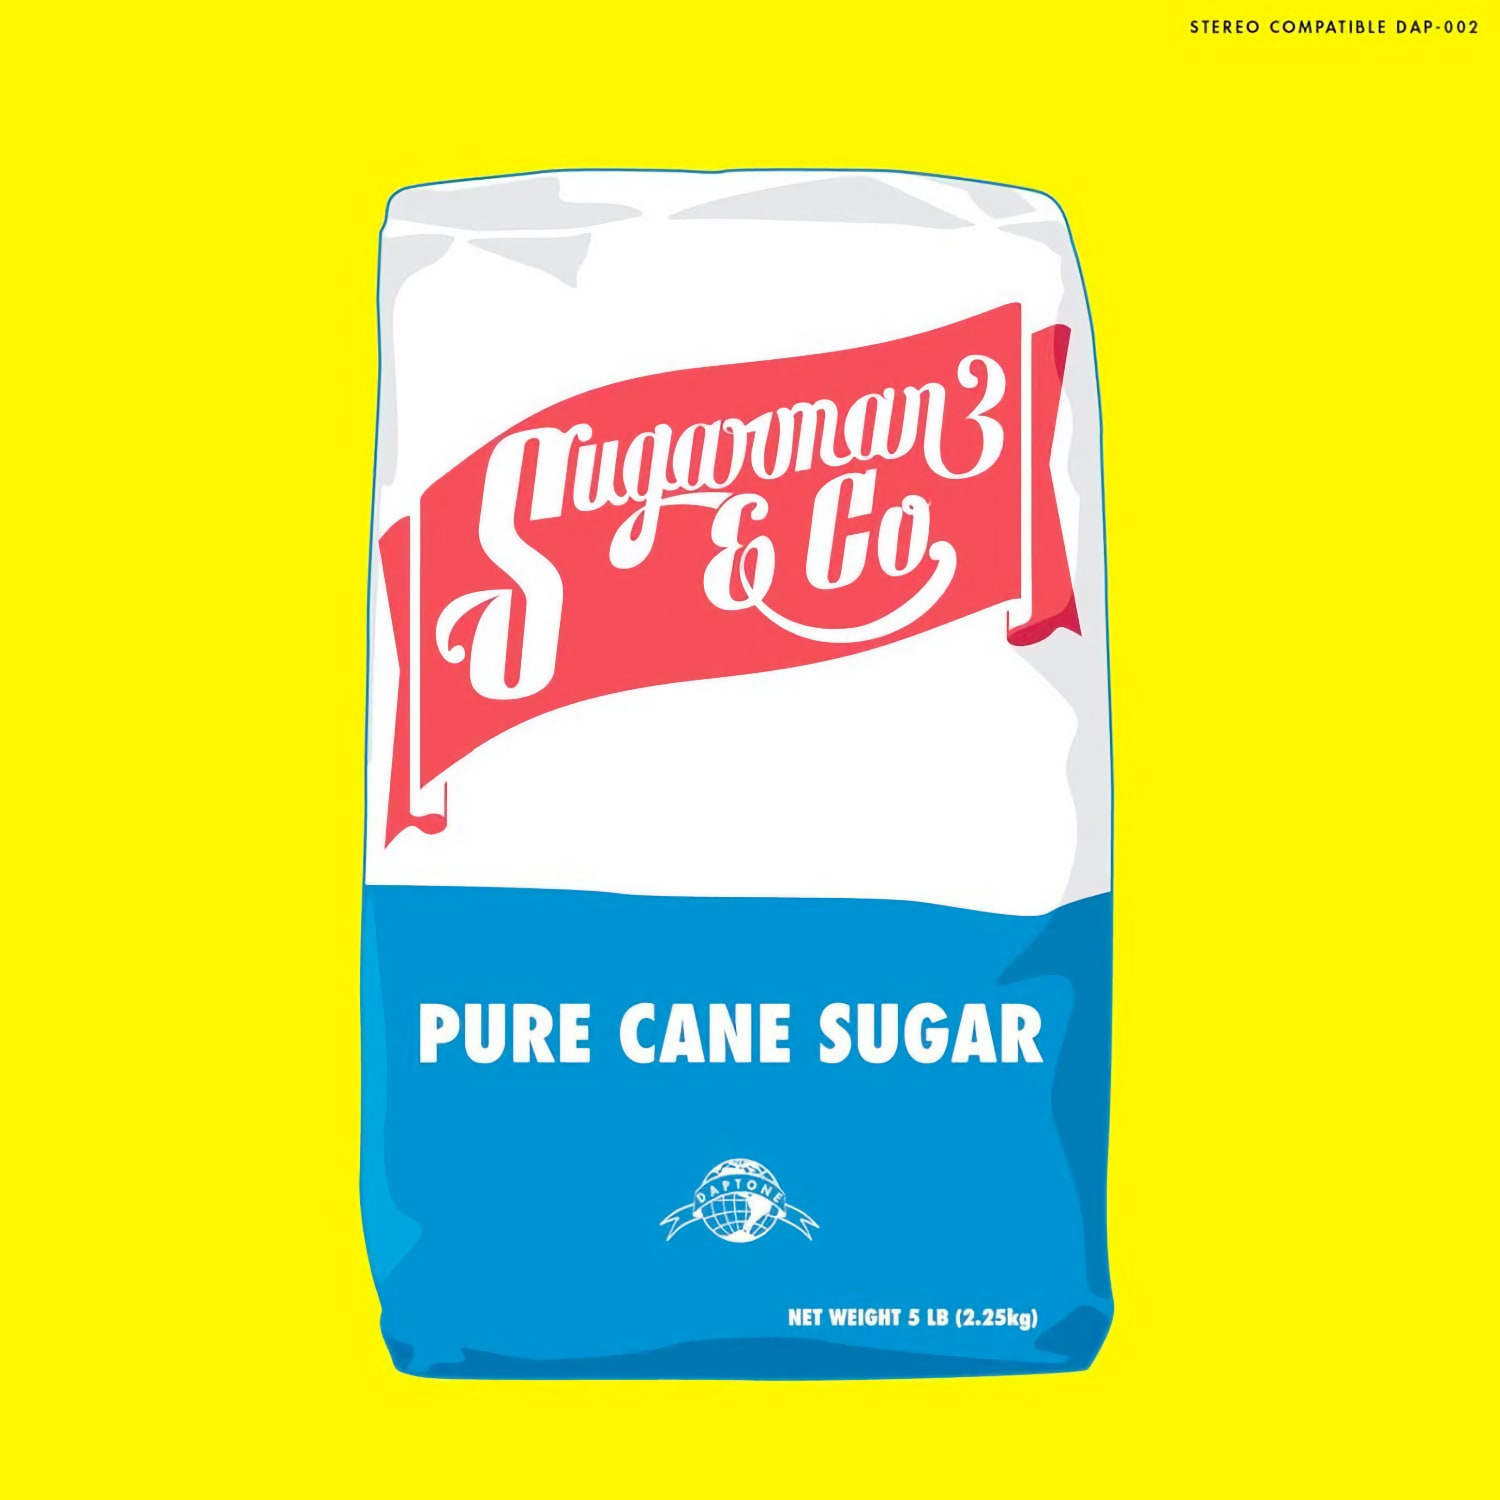 Sugarman 3 & Co - Pure Cane Sugar